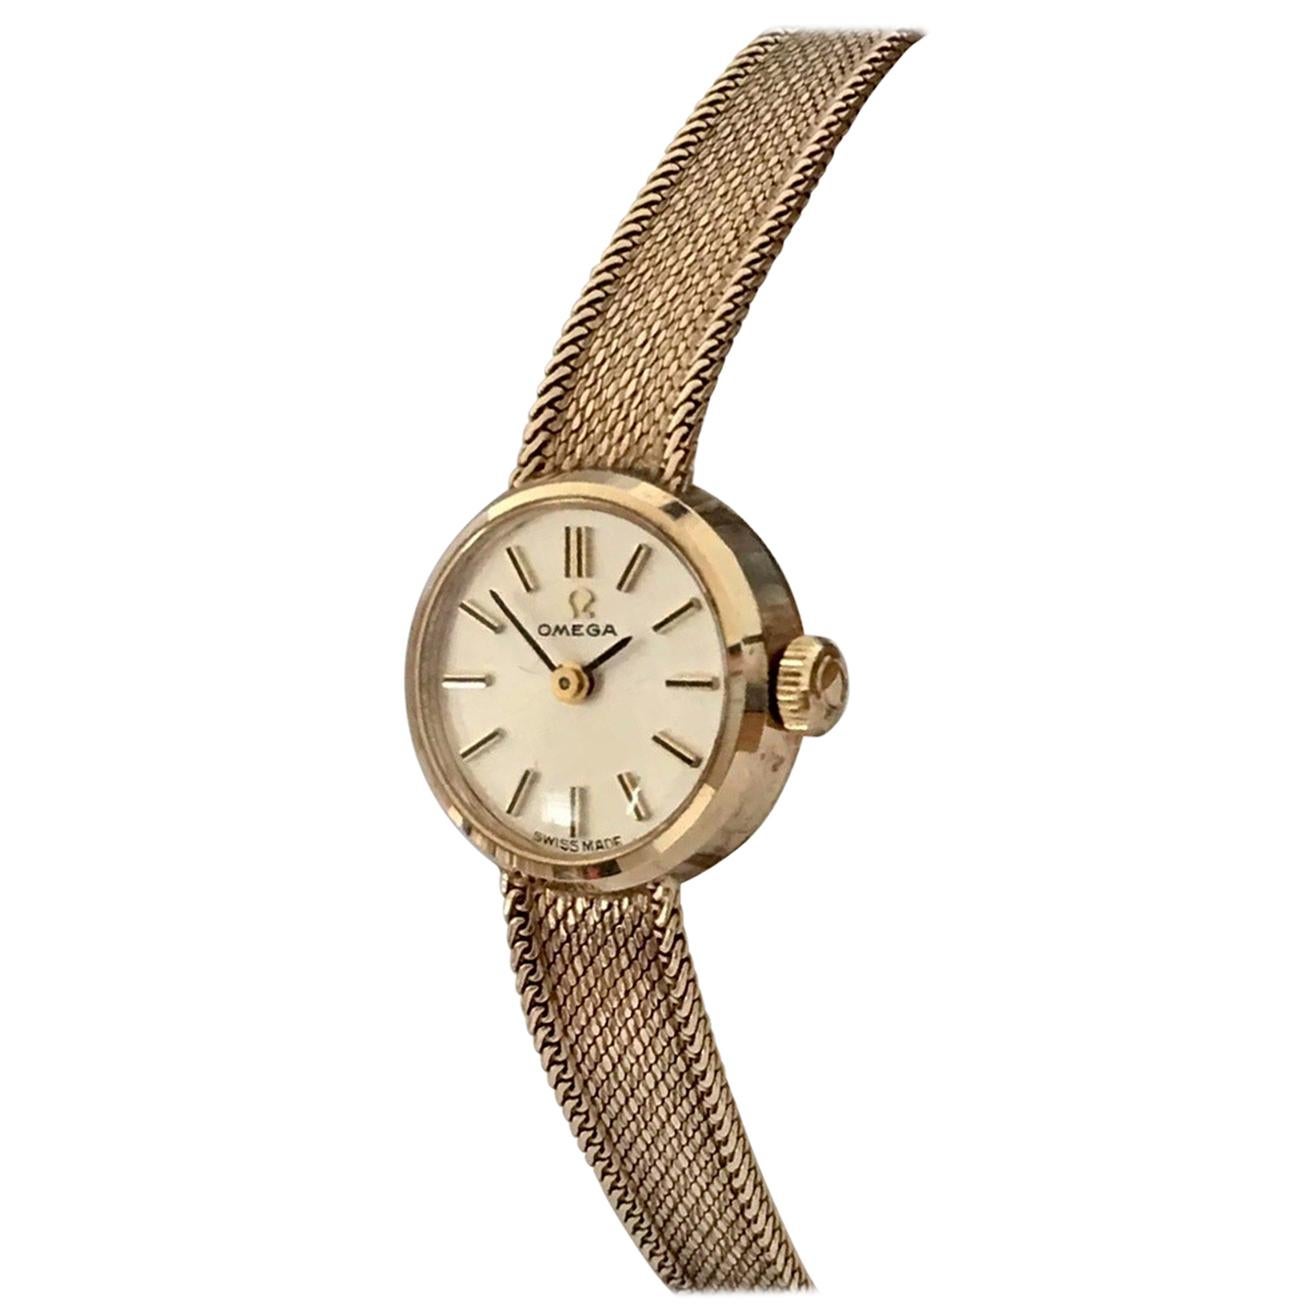 9 Karat Gold Vintage Hand-Winding Omega Ladies Wristwatch